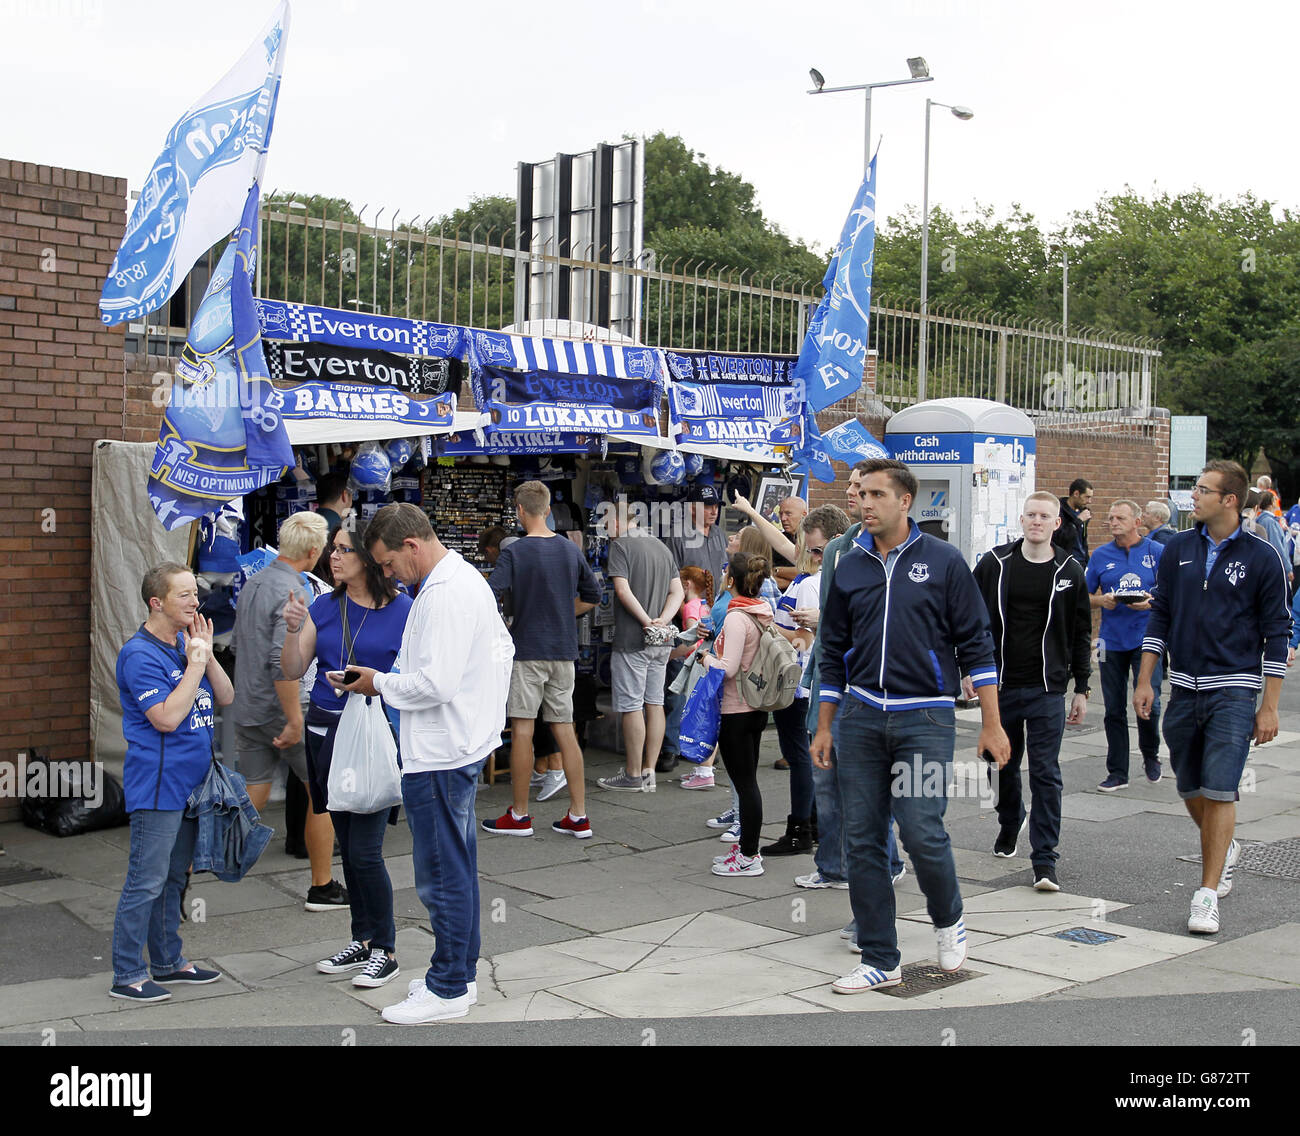 Fútbol - Barclays Premier League - Everton v Manchester City - Goodison Park Foto de stock